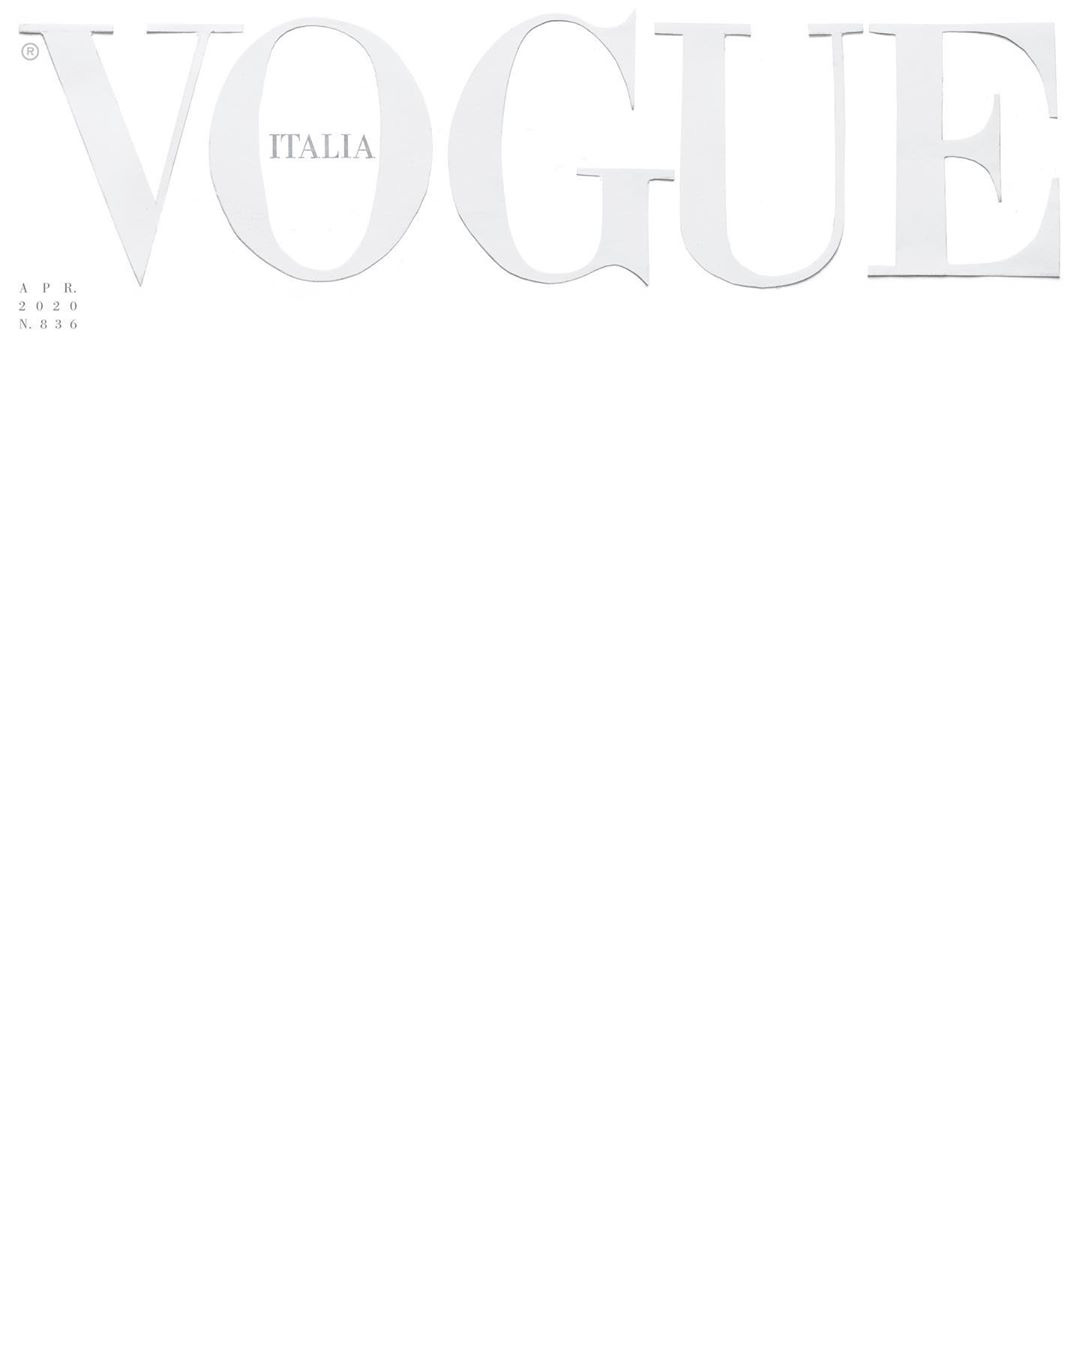 Tạp chí Vogue luôn là nguồn cảm hứng vô tận cho các tín đồ thời trang. Với những bộ sưu tập mới nhất của các nhà mốt hàng đầu thế giới, bạn sẽ đắm chìm trong những hình ảnh tuyệt đẹp và được cập nhật liên tục để không bỏ lỡ bất kỳ xu hướng mới nào.